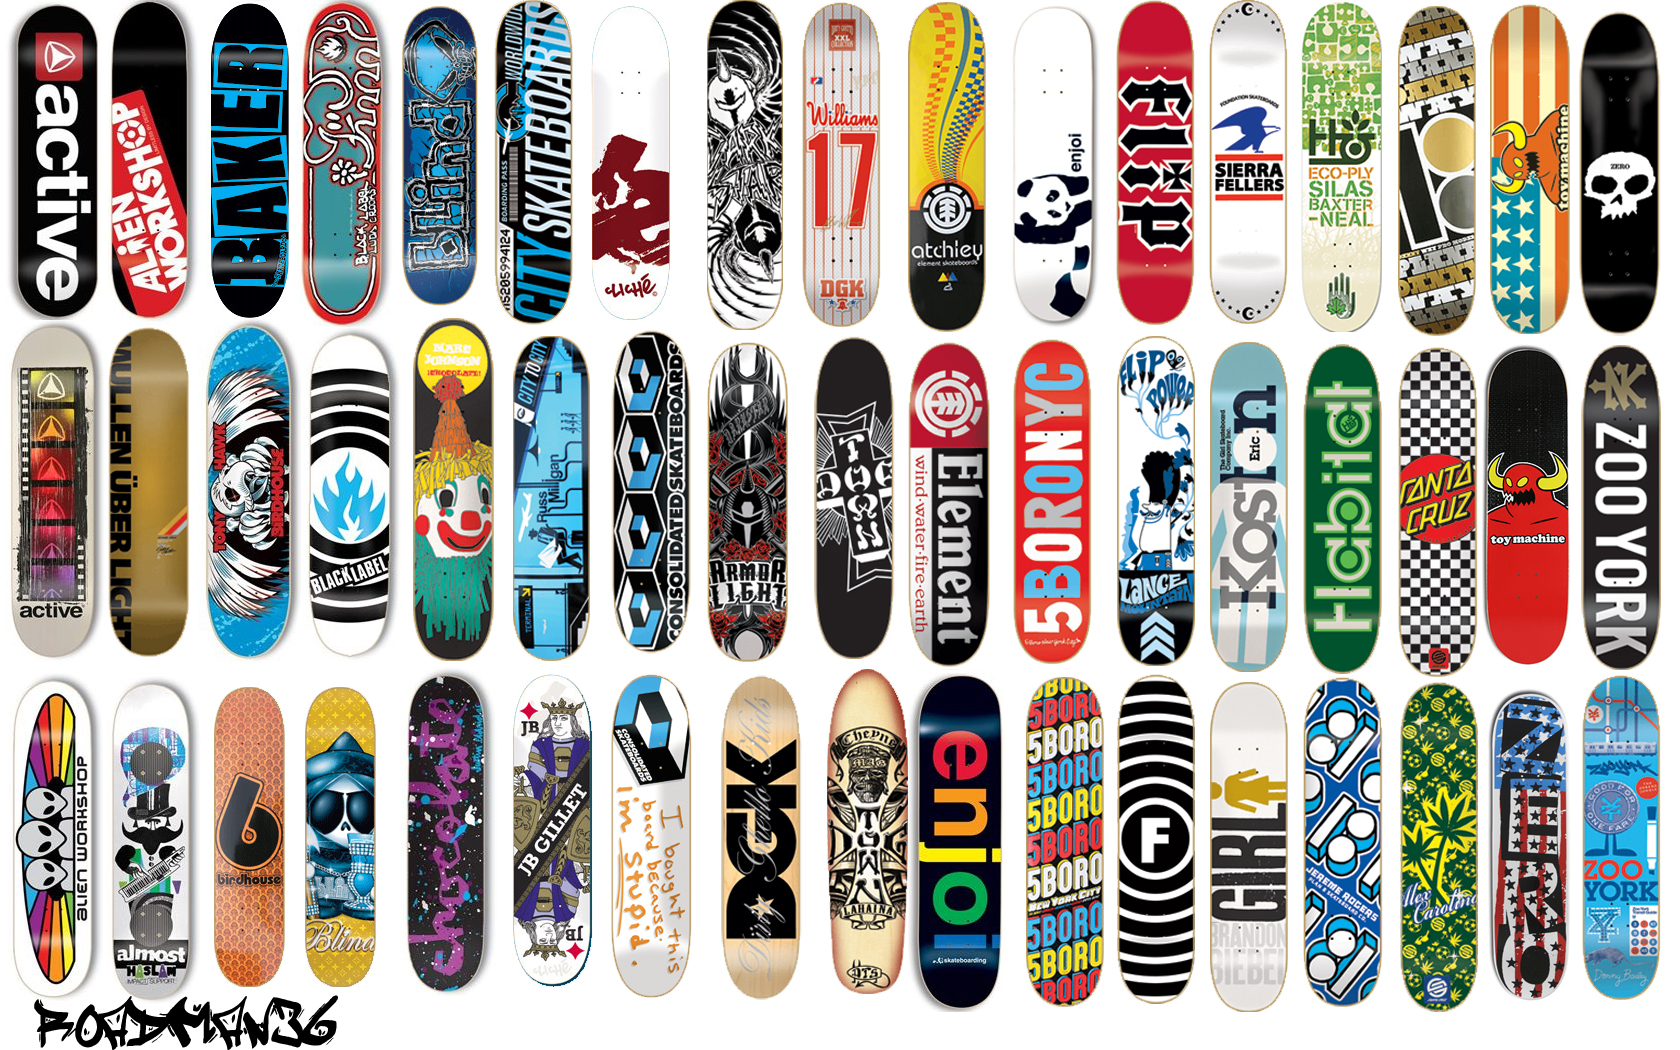 Baker Skateboards Wallpaper. Stereo Skateboards Wallpaper, Chocolate Skateboards Wallpaper and Birdhouse Skateboards Wallpaper